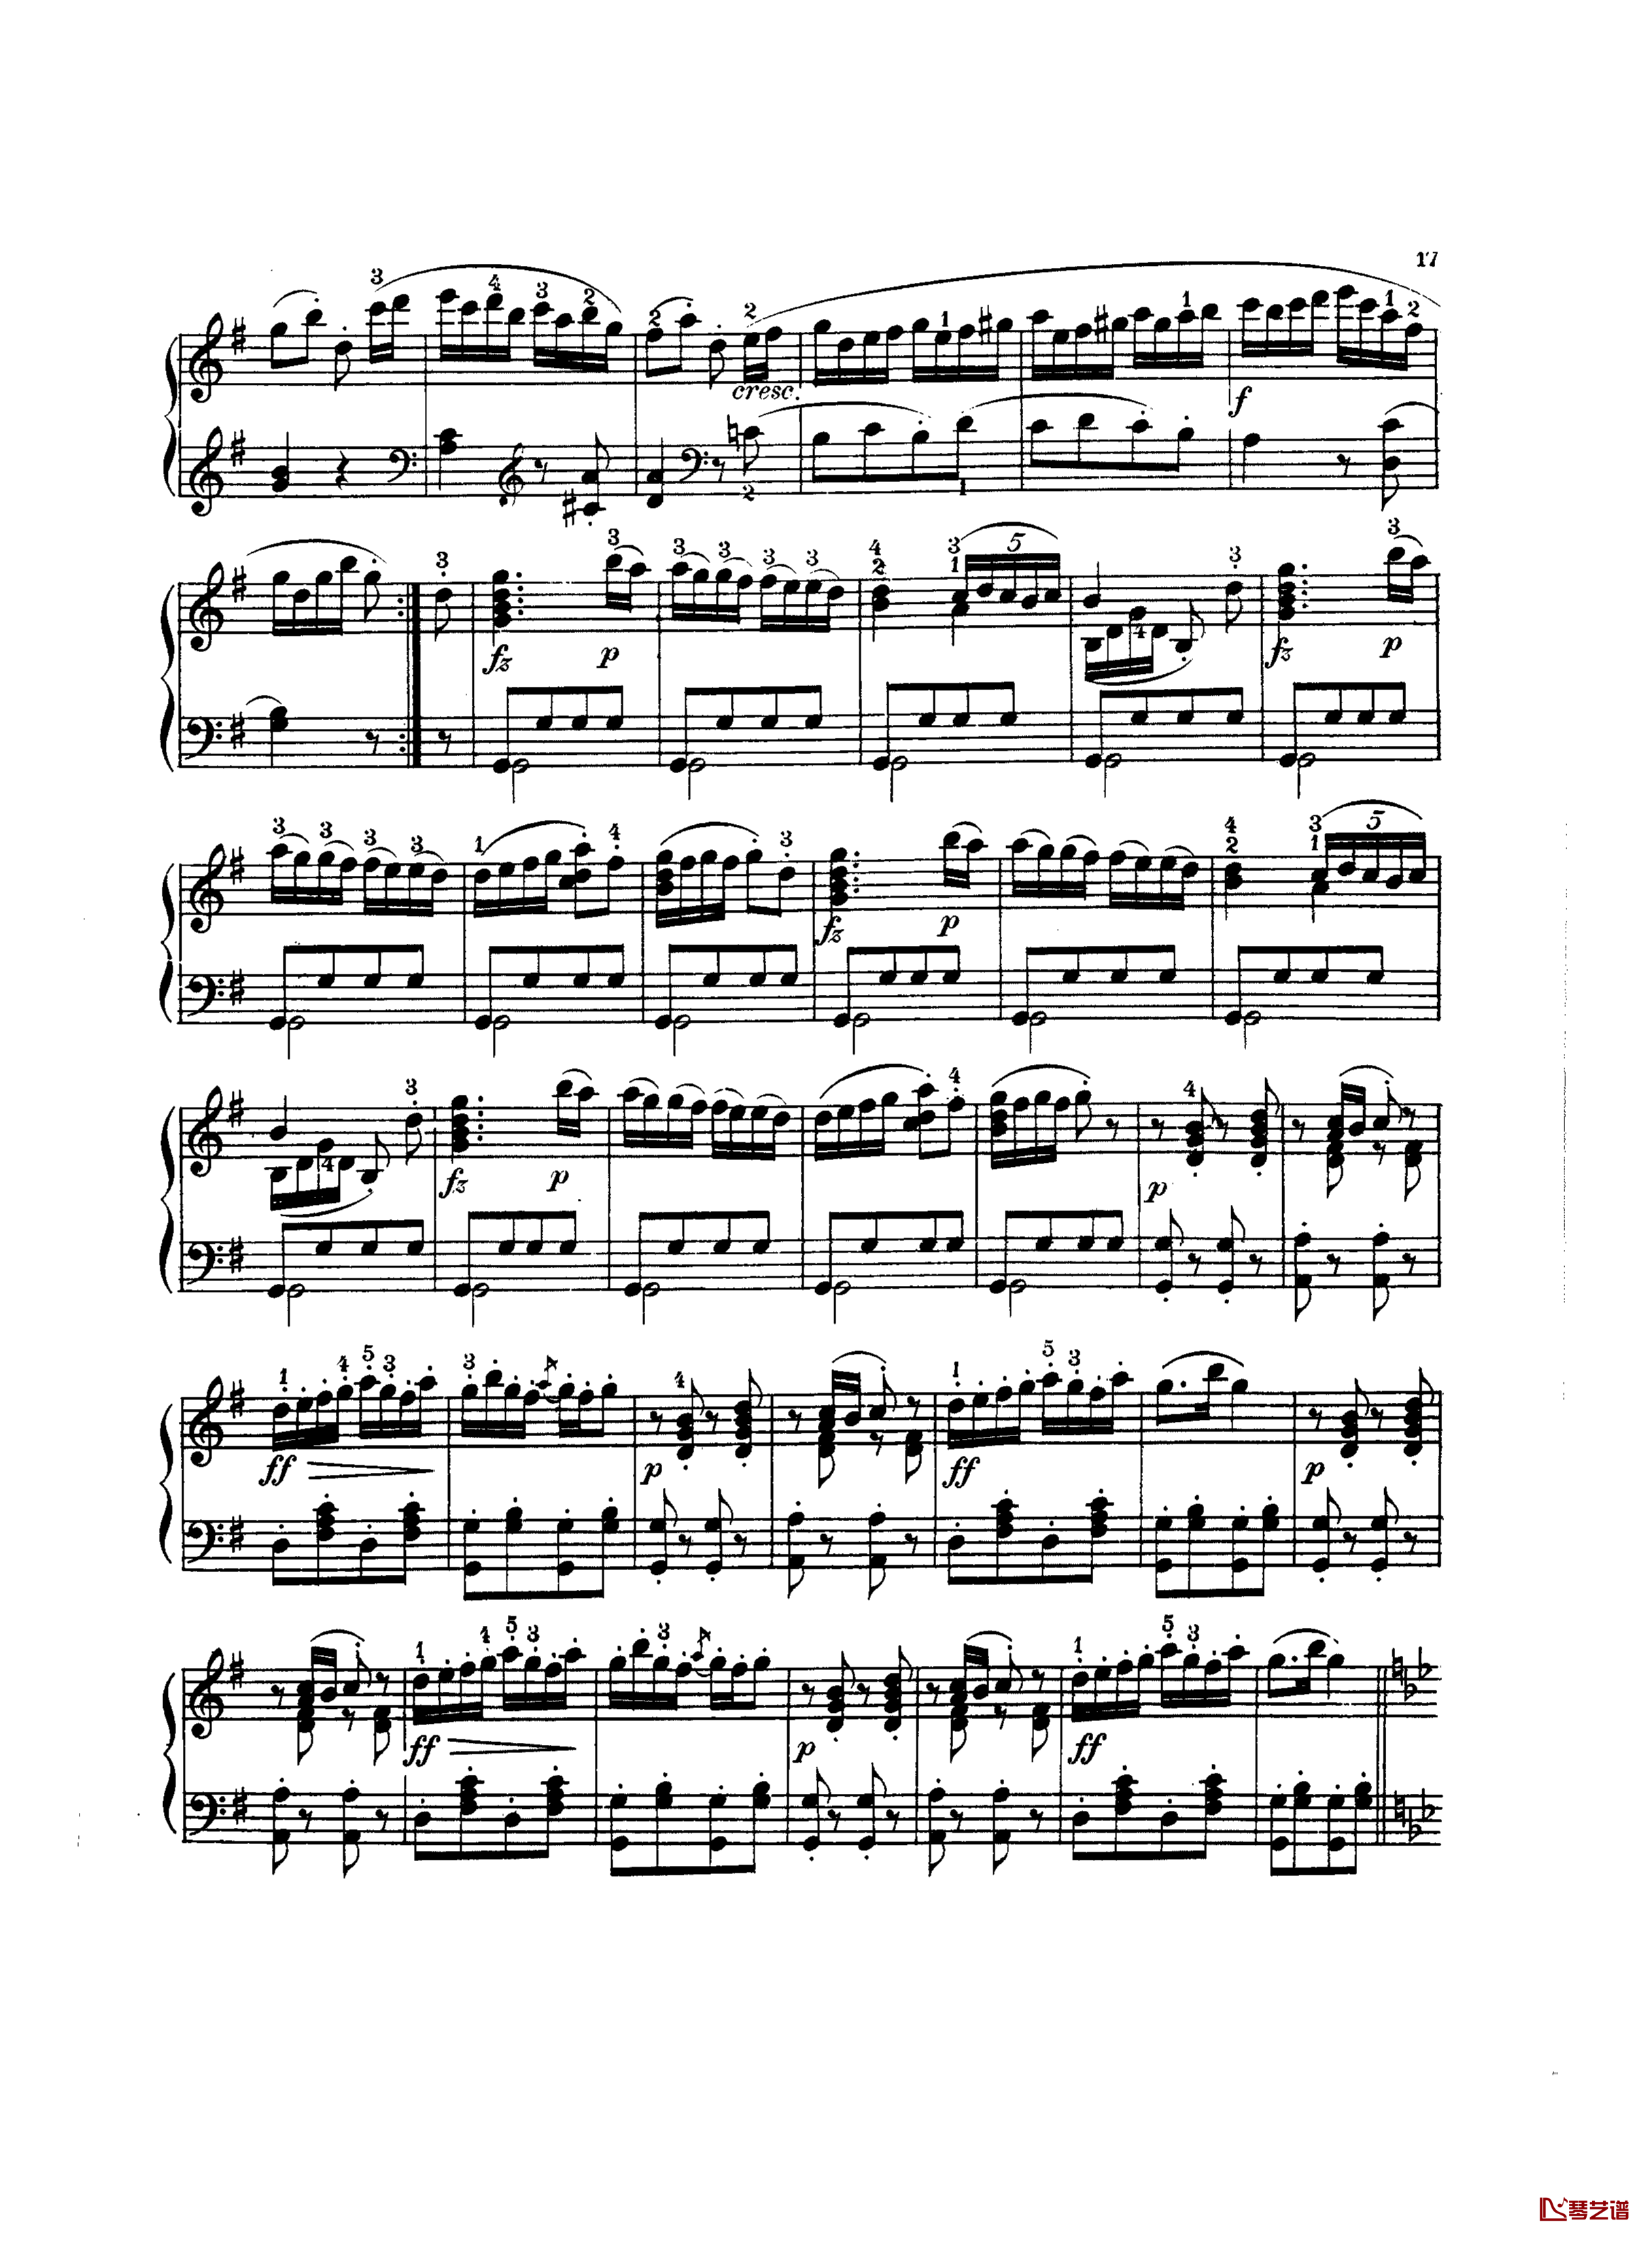 吉普赛回旋曲钢琴谱-带指法版-海顿2